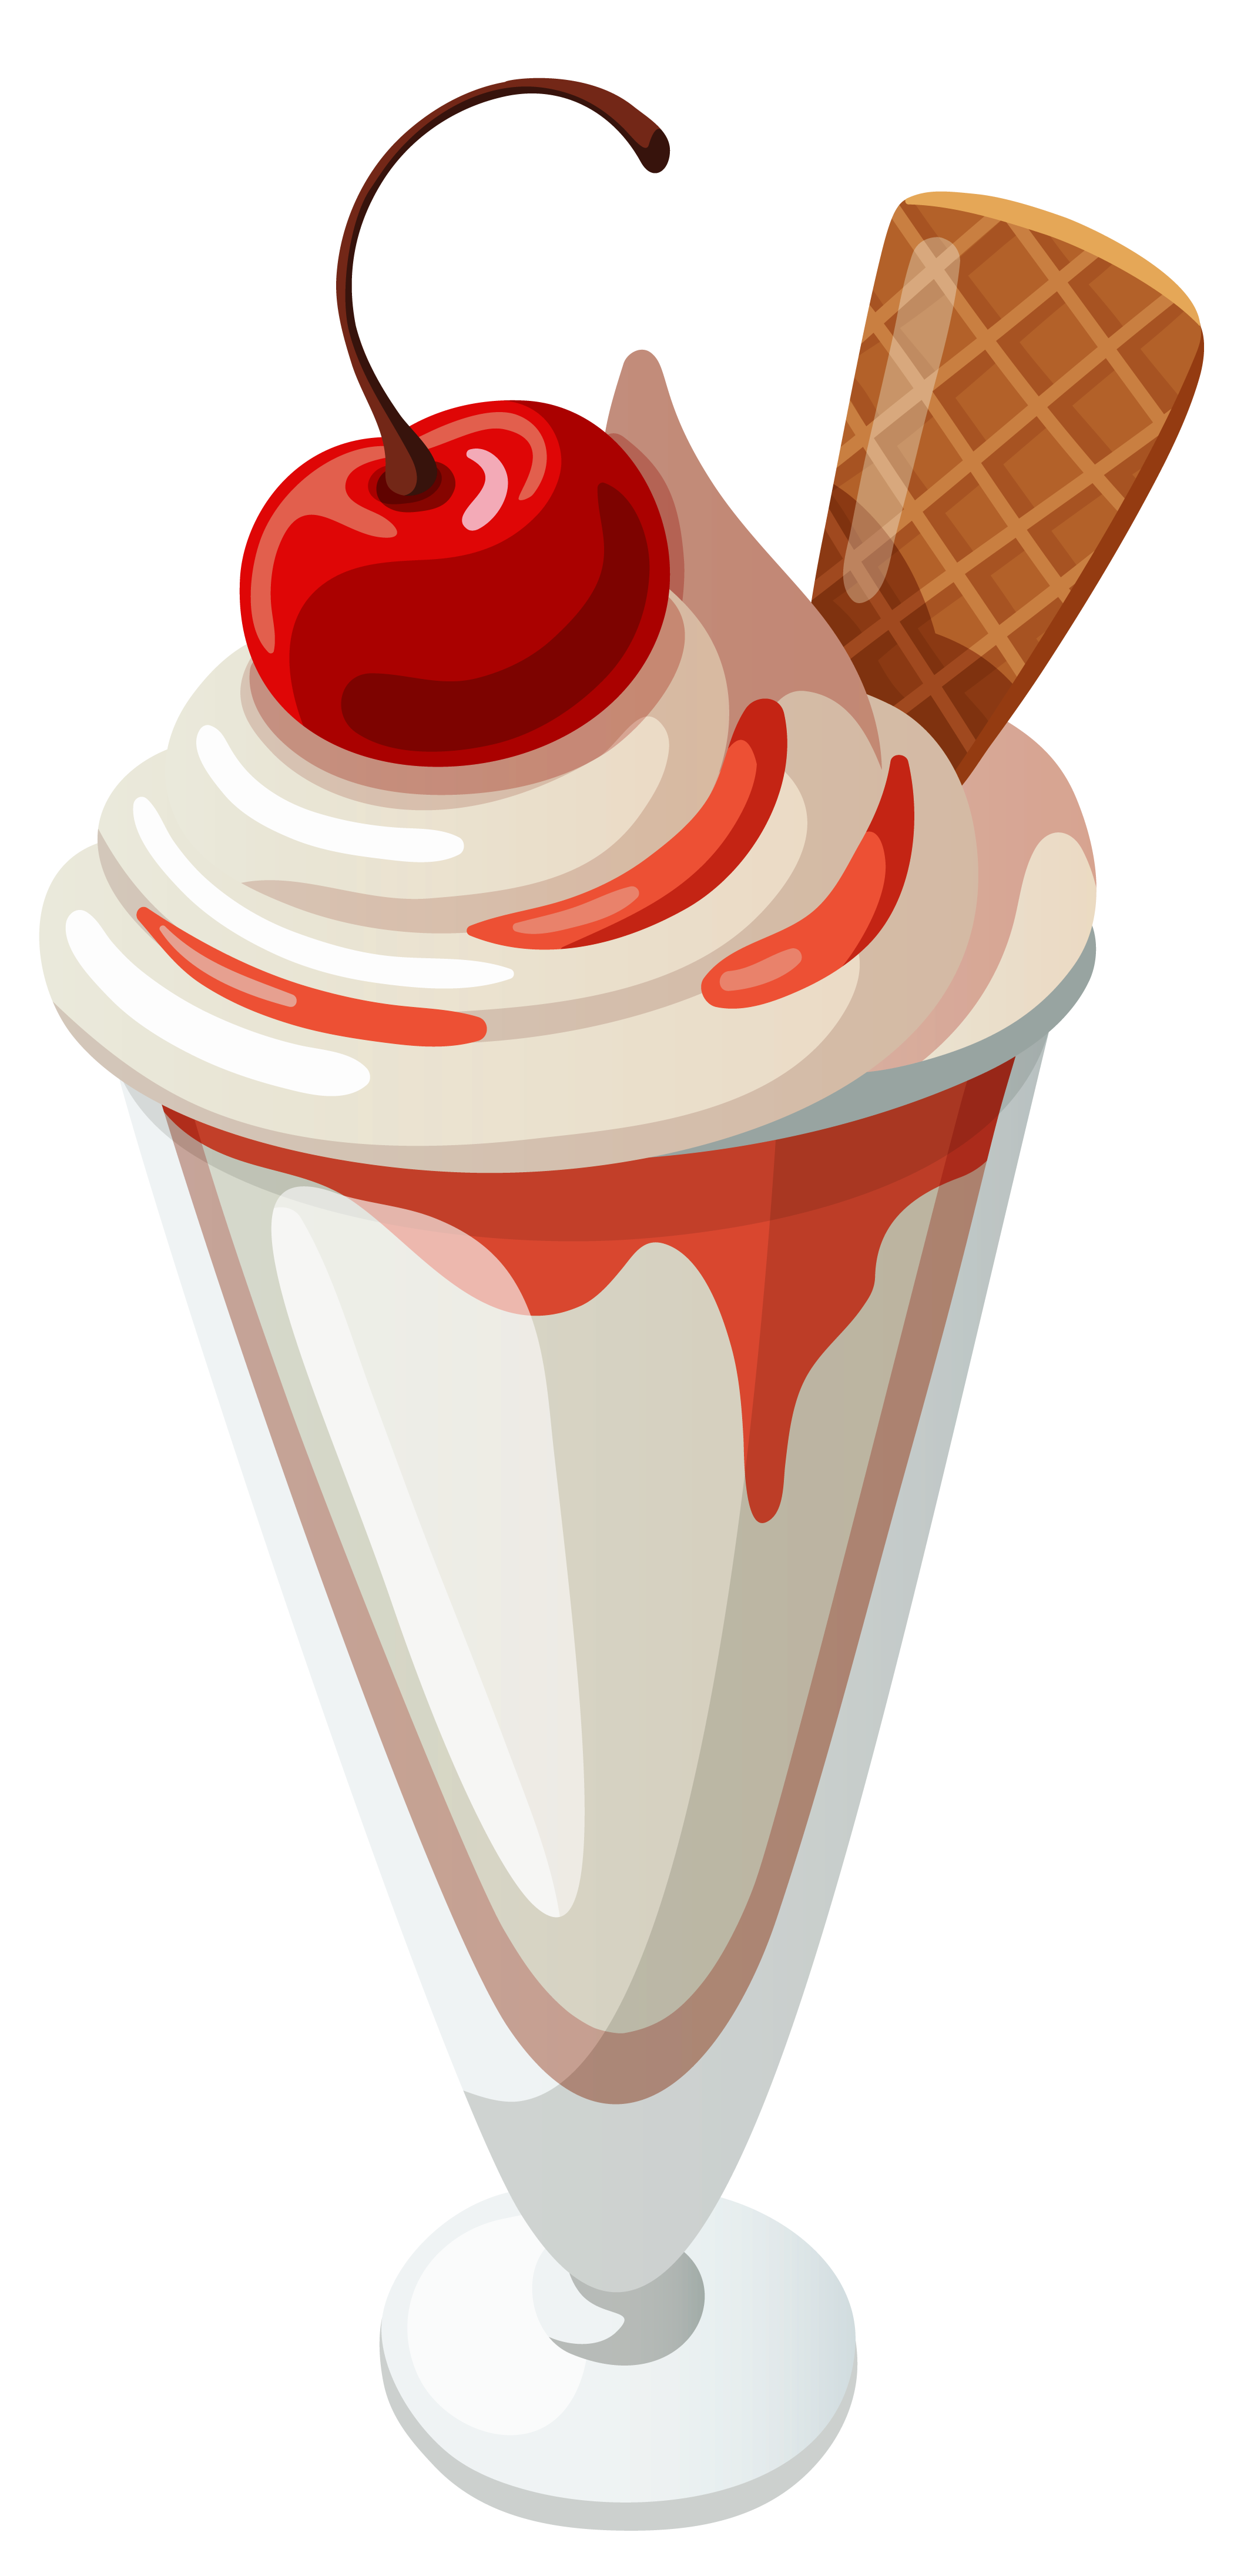 Ice cream sundae clipart 6